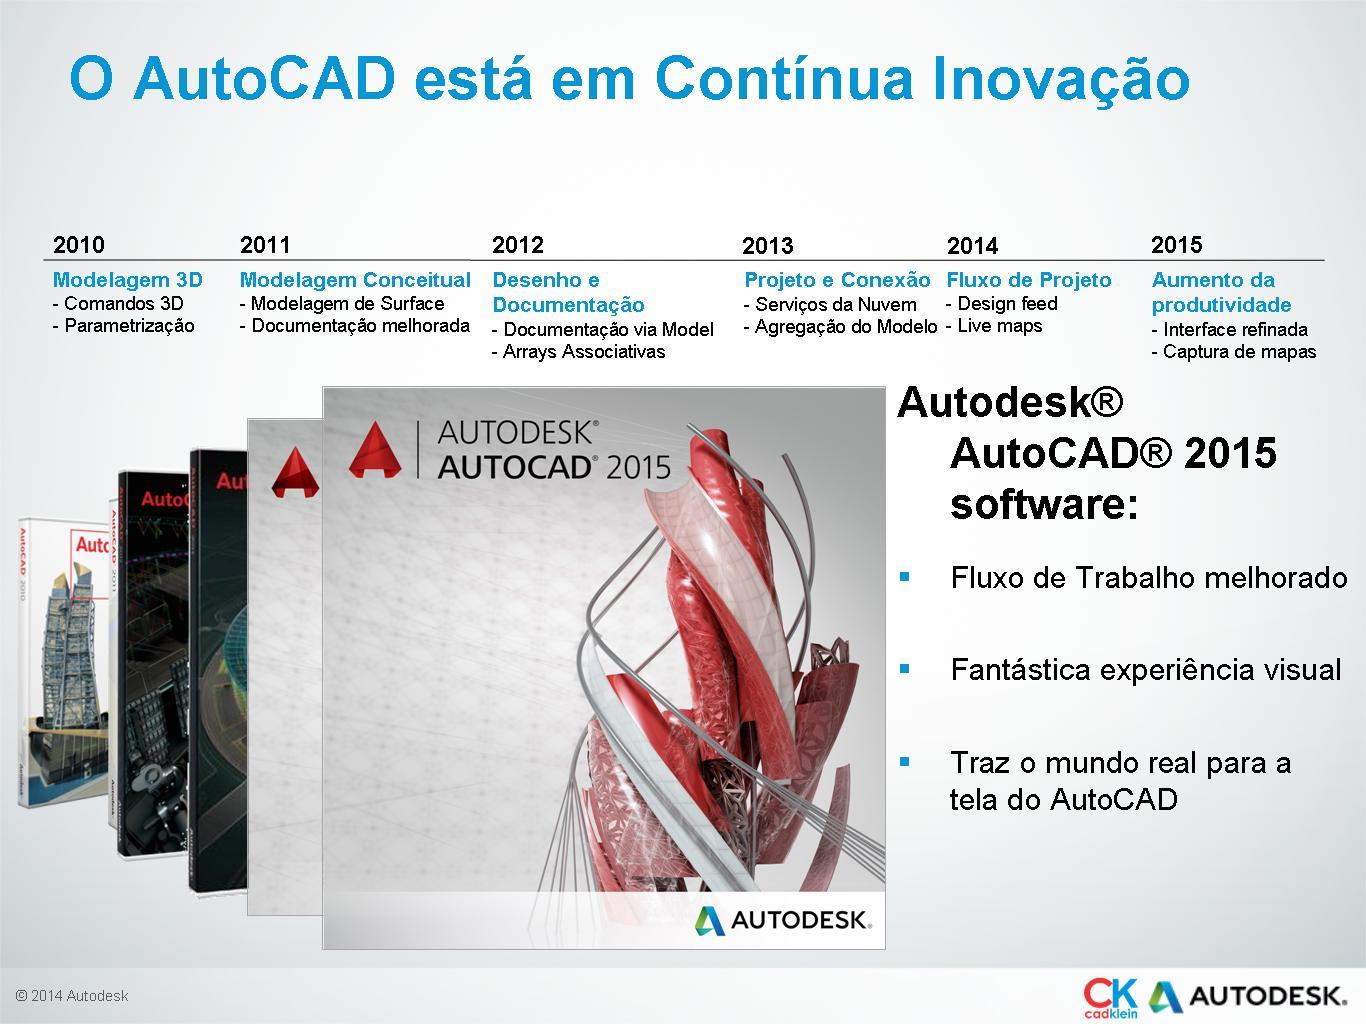 A Autodesk está continuamente melhorando cada um dos seus softwares, é um trabalho de equipe fantástico!